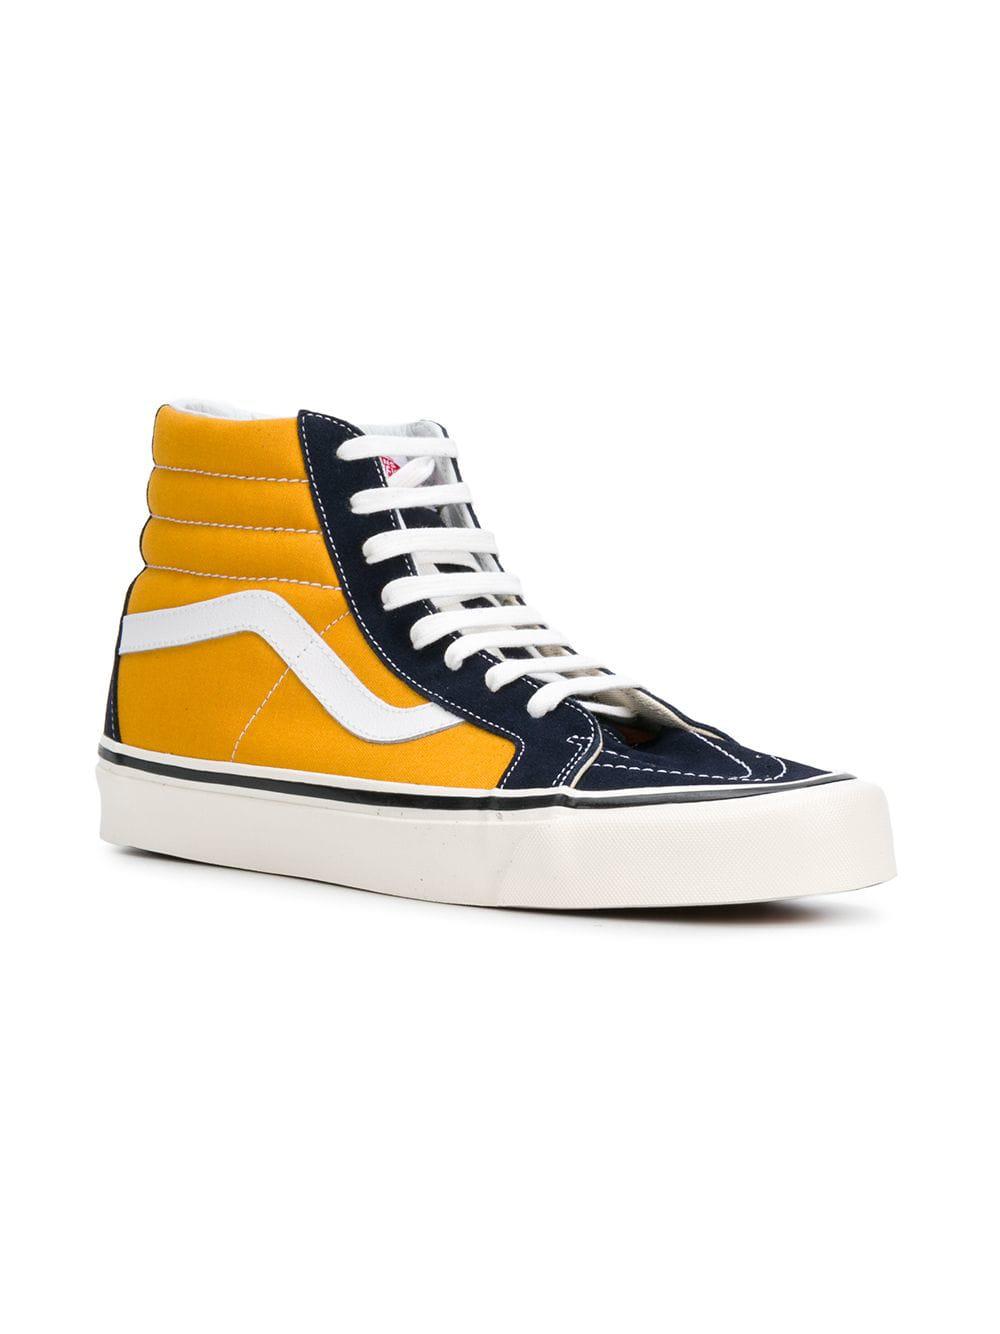 Vans Canvas Sk8-hi Sneakers in Yellow 